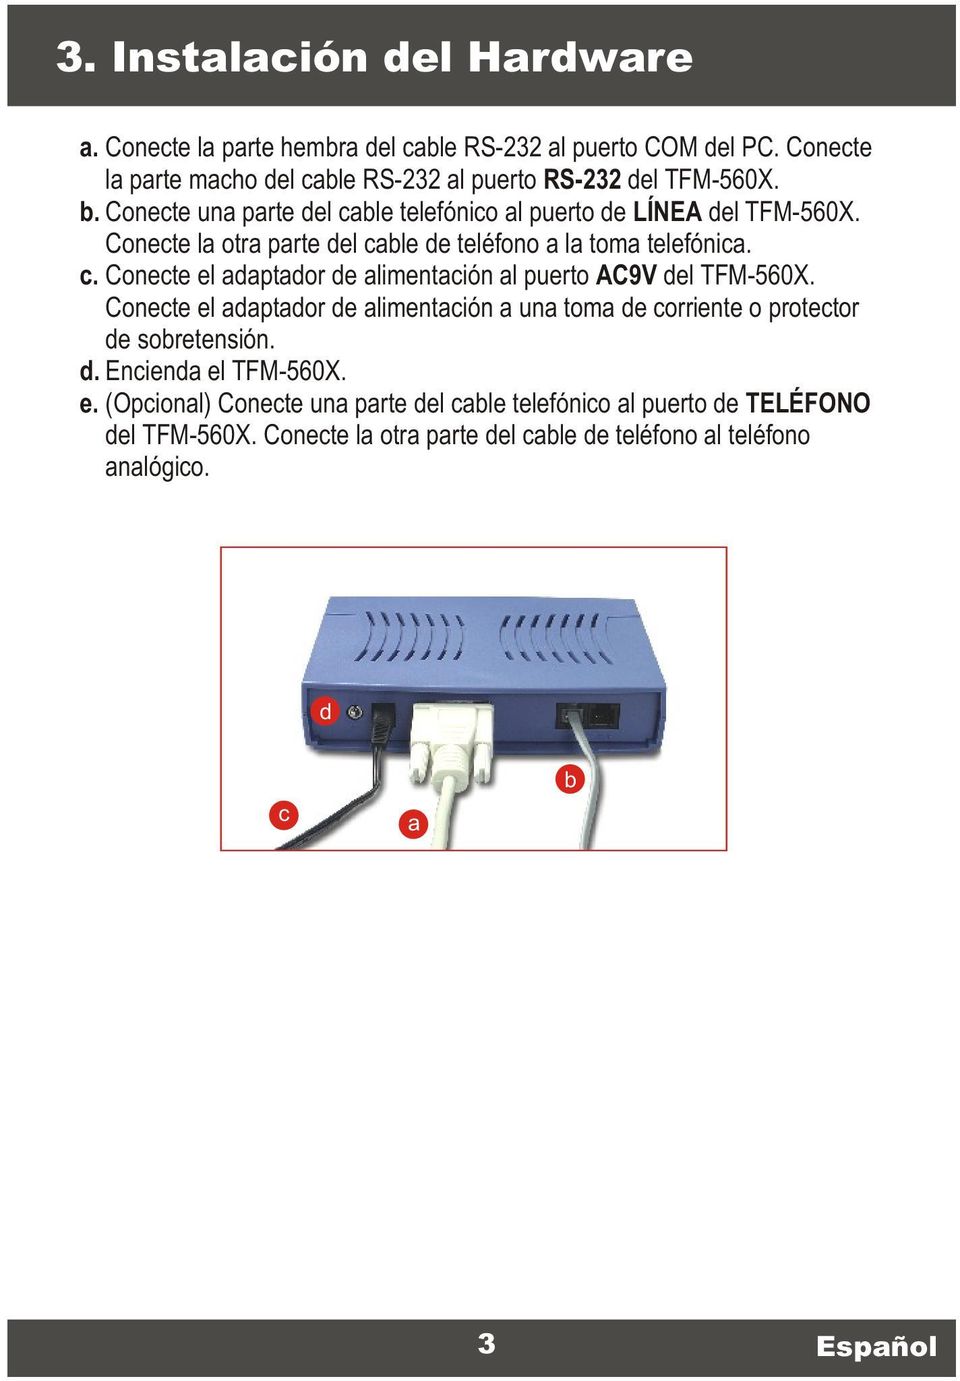 Conecte el adaptador de alimentación a una toma de corriente o protector de sobretensión. d. Encienda el TFM-560X. e. (Opcional) Conecte una parte del cable telefónico al puerto de TELÉFONO del TFM-560X.